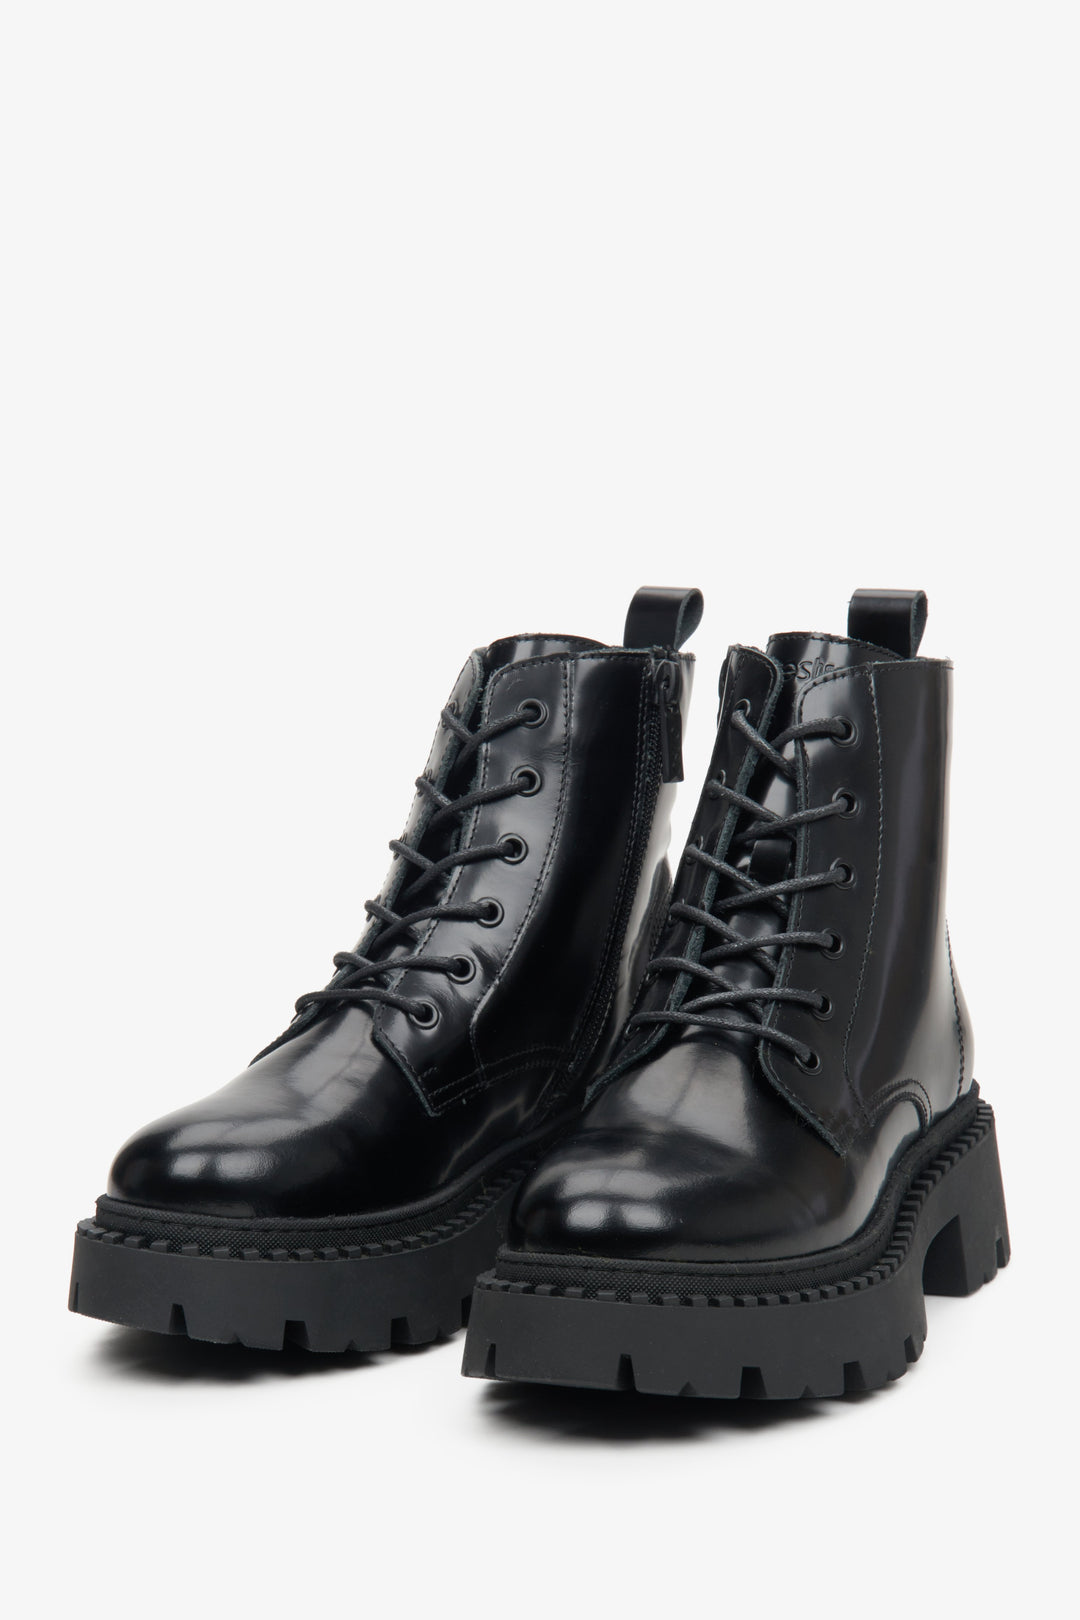 Czarne, sznurowane niskie botki damskie ze skóry naturalnej Estro - zbliżenie na czubek buta i system sznurowania.